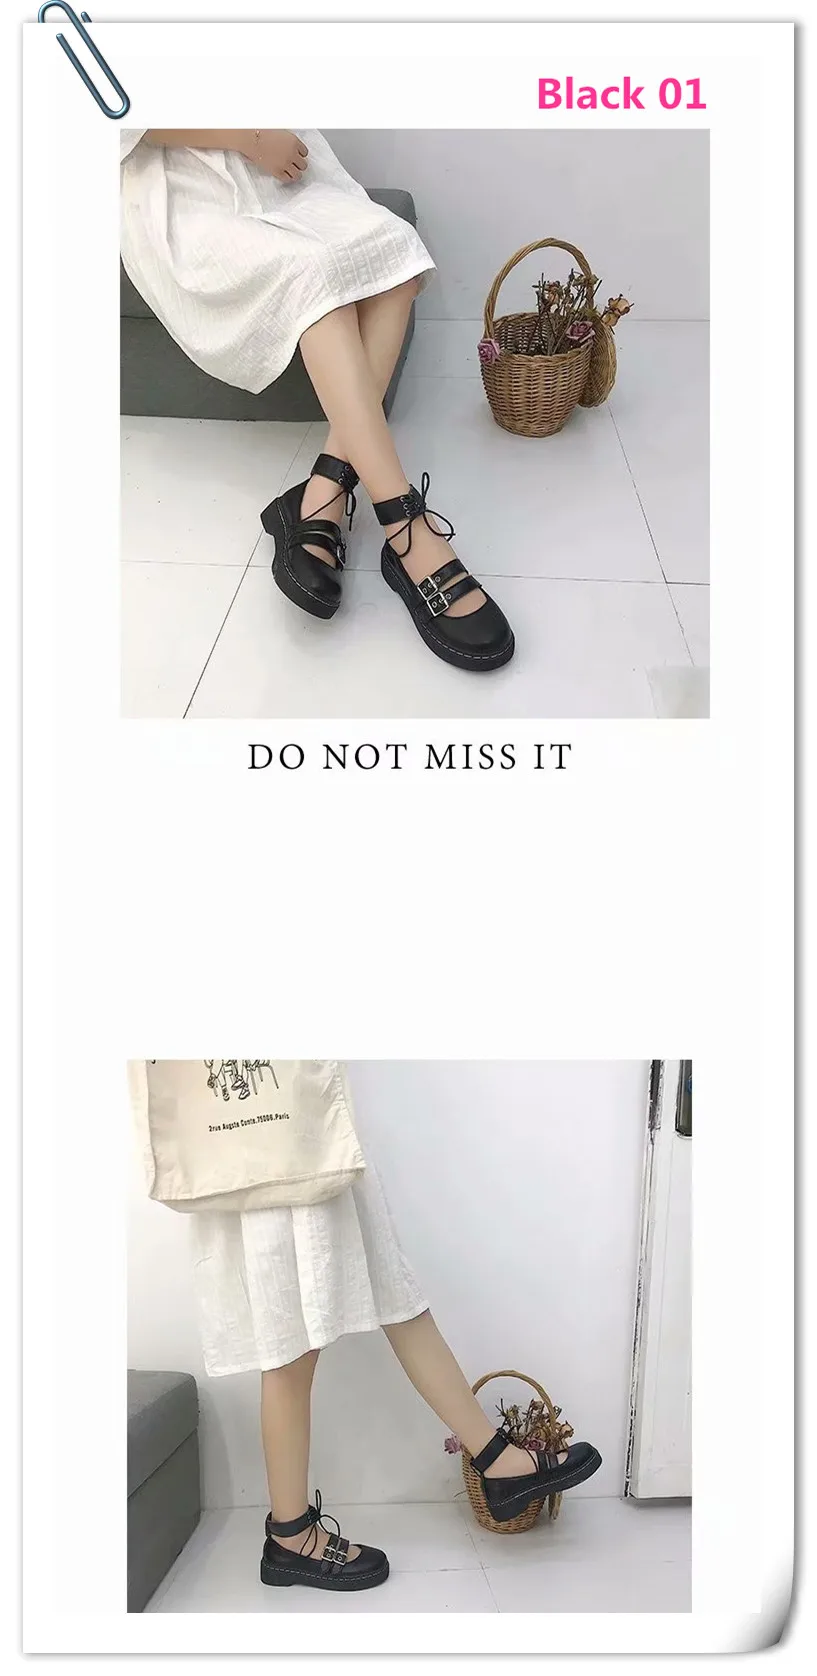 Обувь в японском стиле Лолиты для студентов; обувь для девочек-студенток; форменная обувь из искусственной кожи; обувь Mary Jane